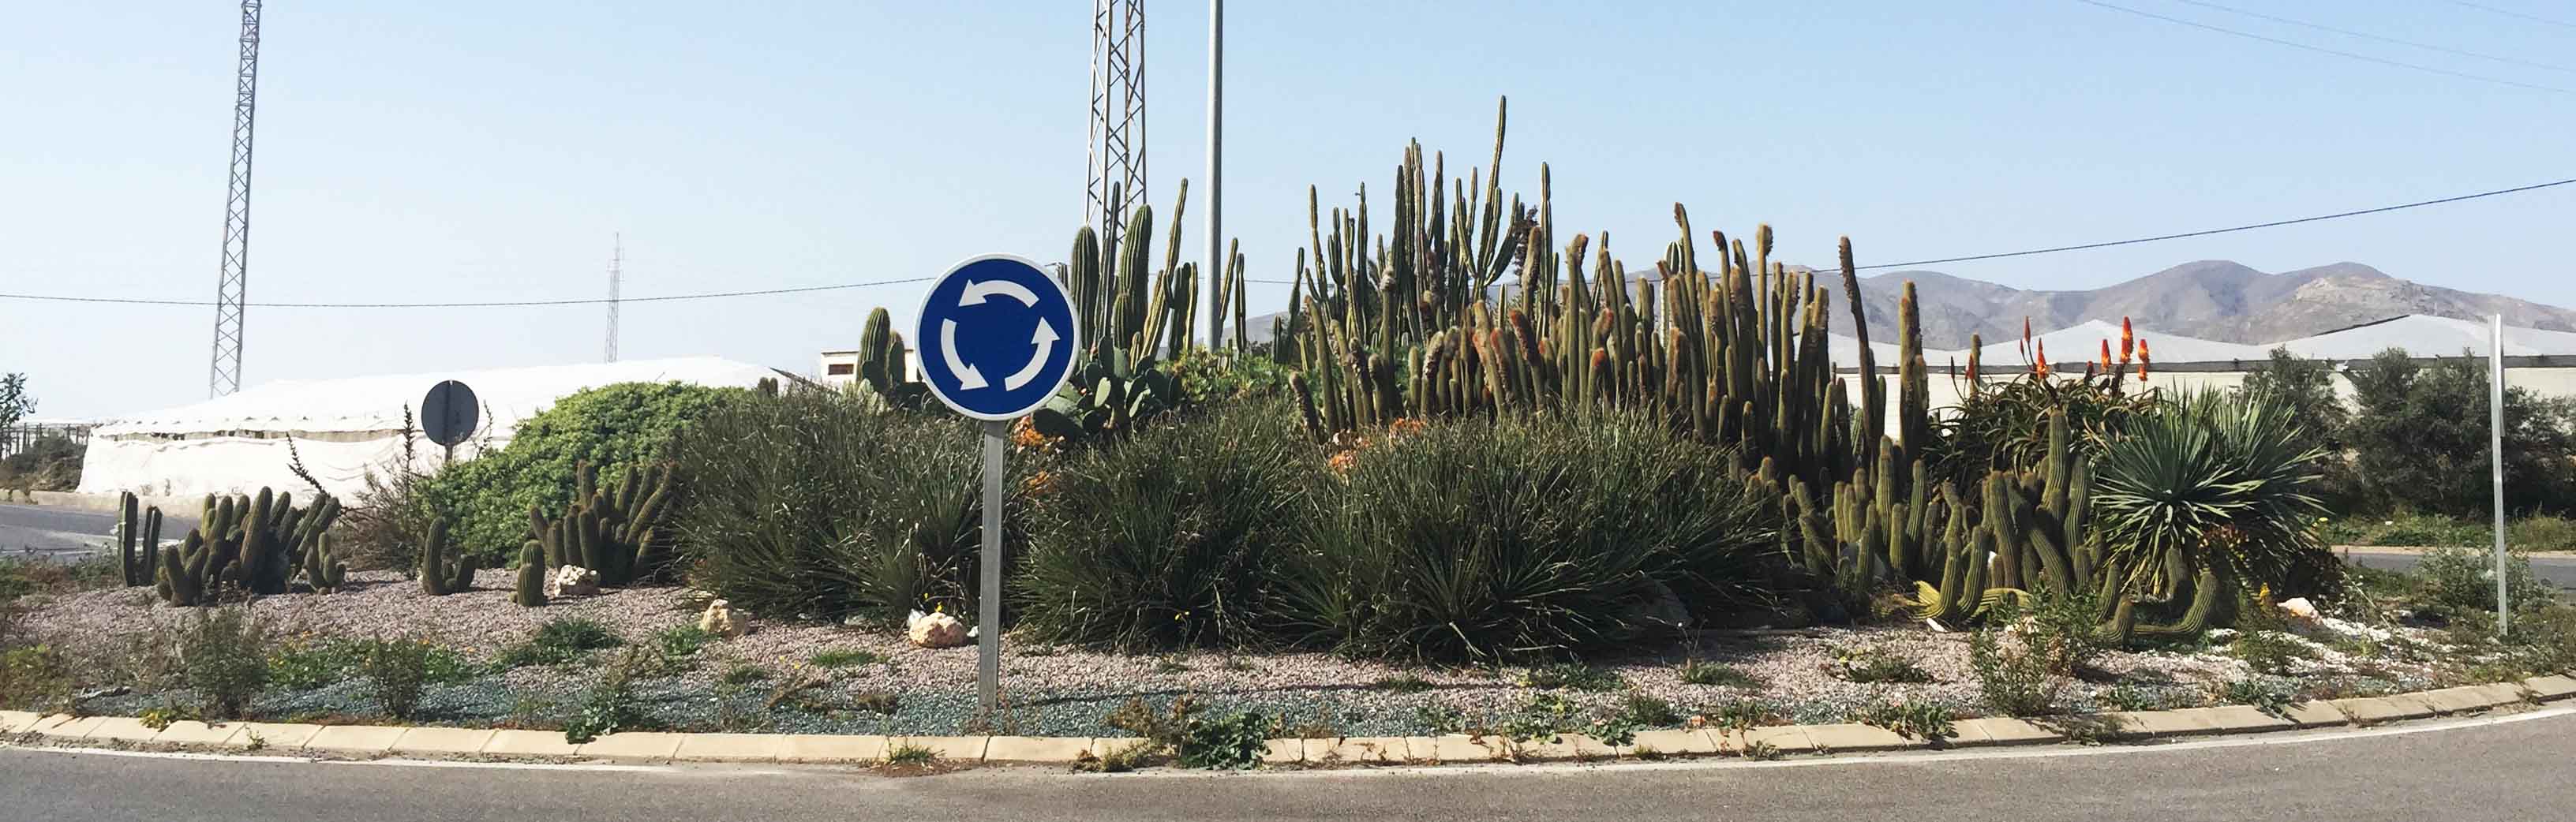 Rotonda Cactus Almería